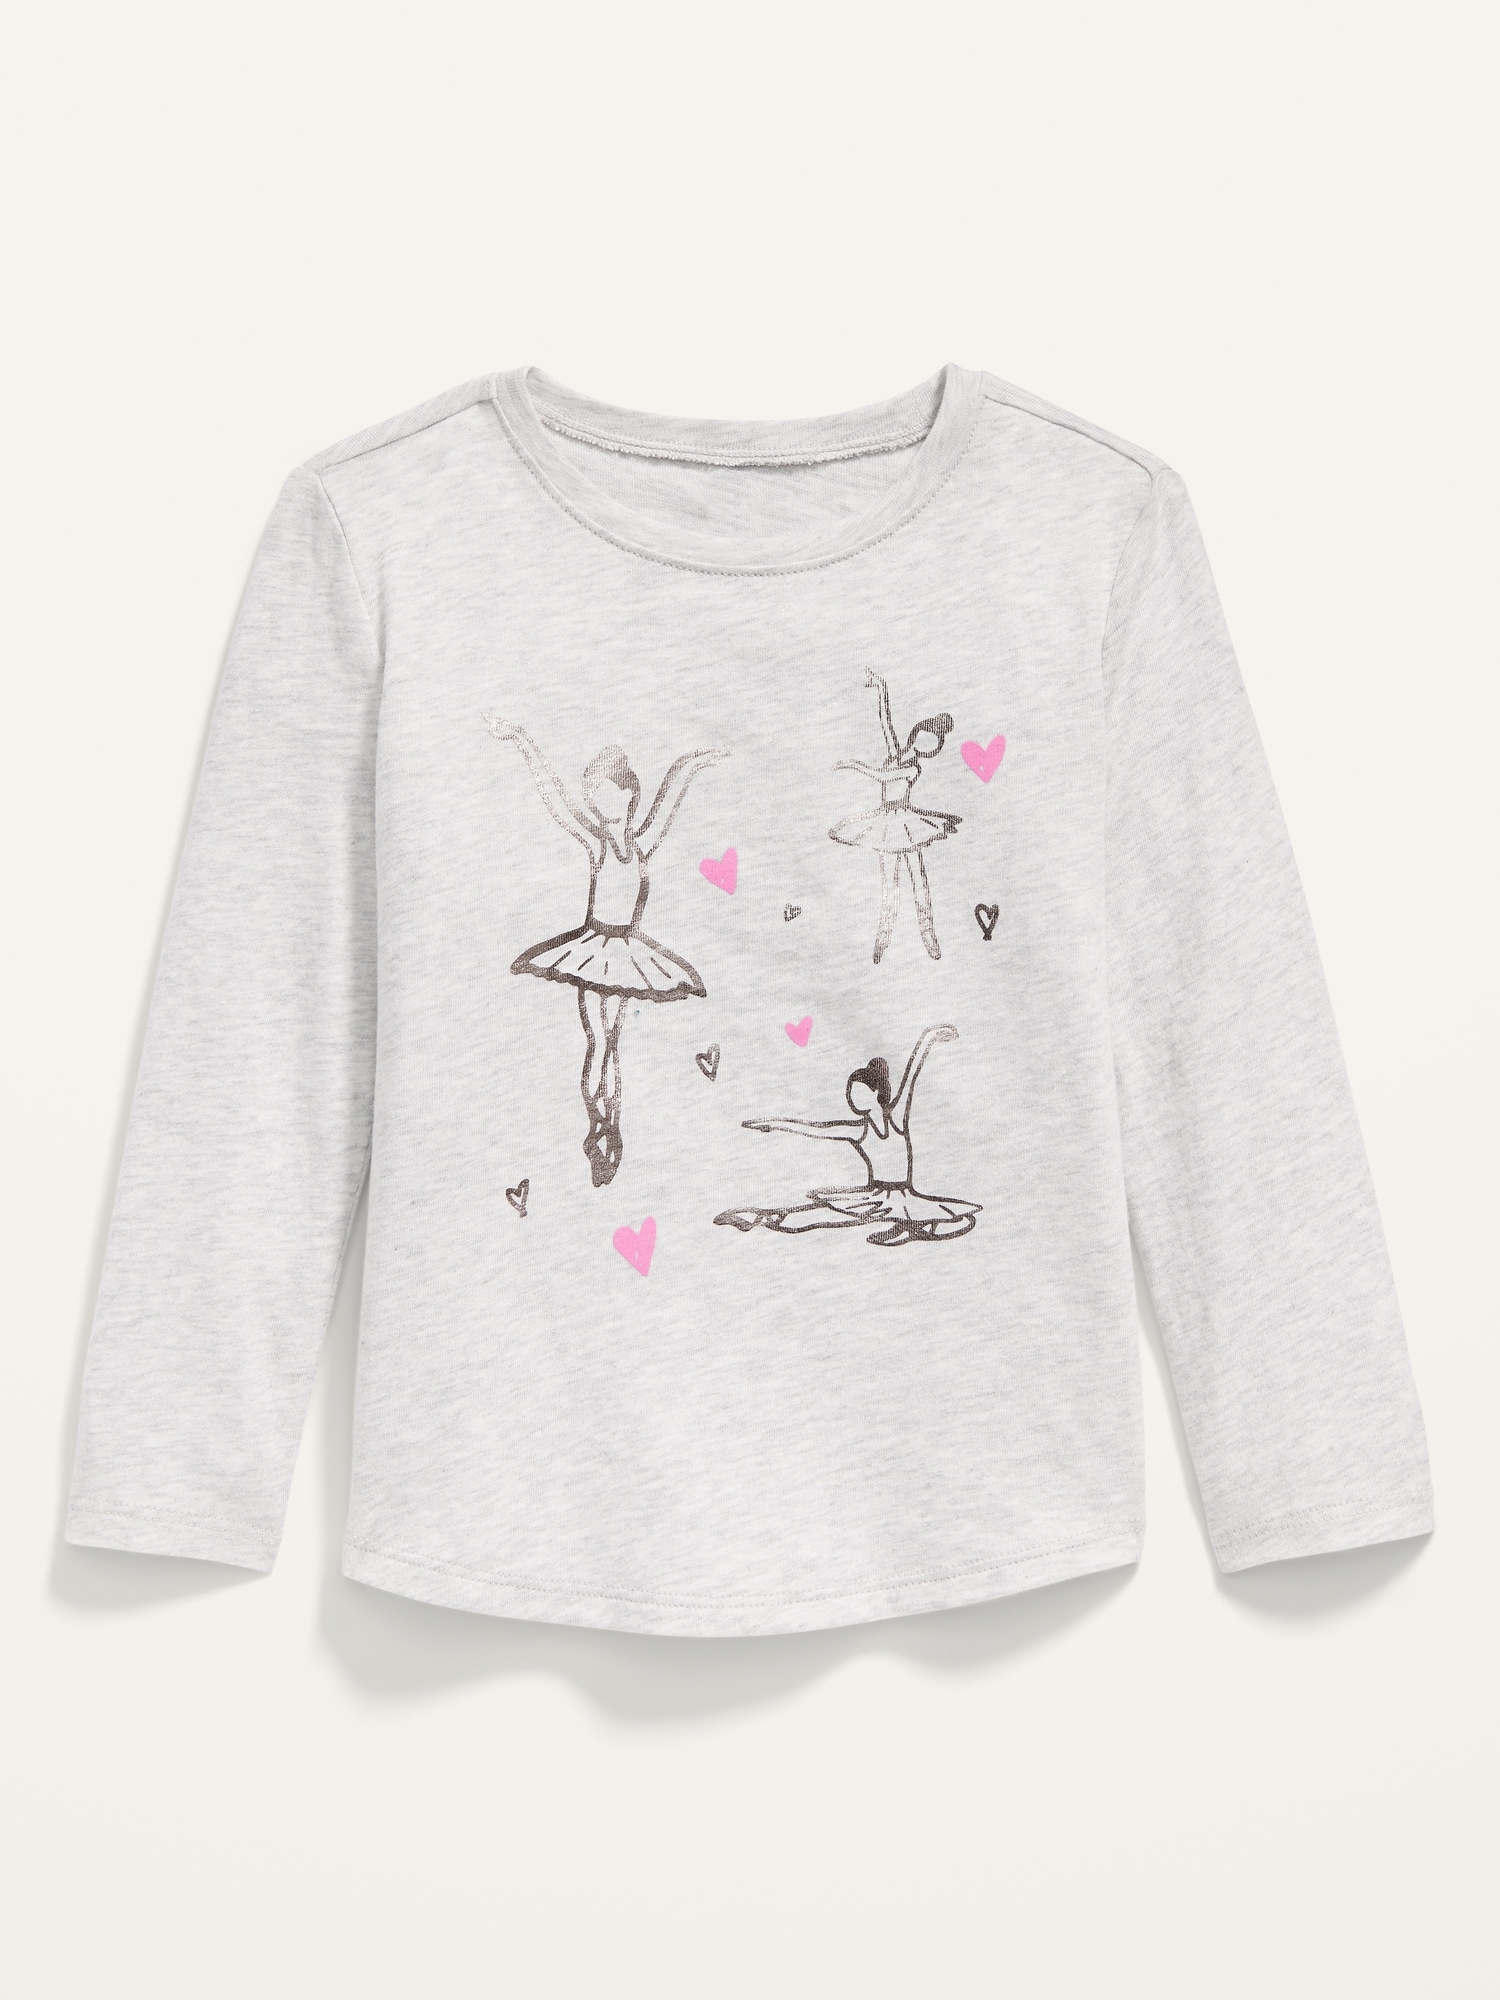 Ballerina-Graphic Long-Sleeve Tee for Toddler Girls